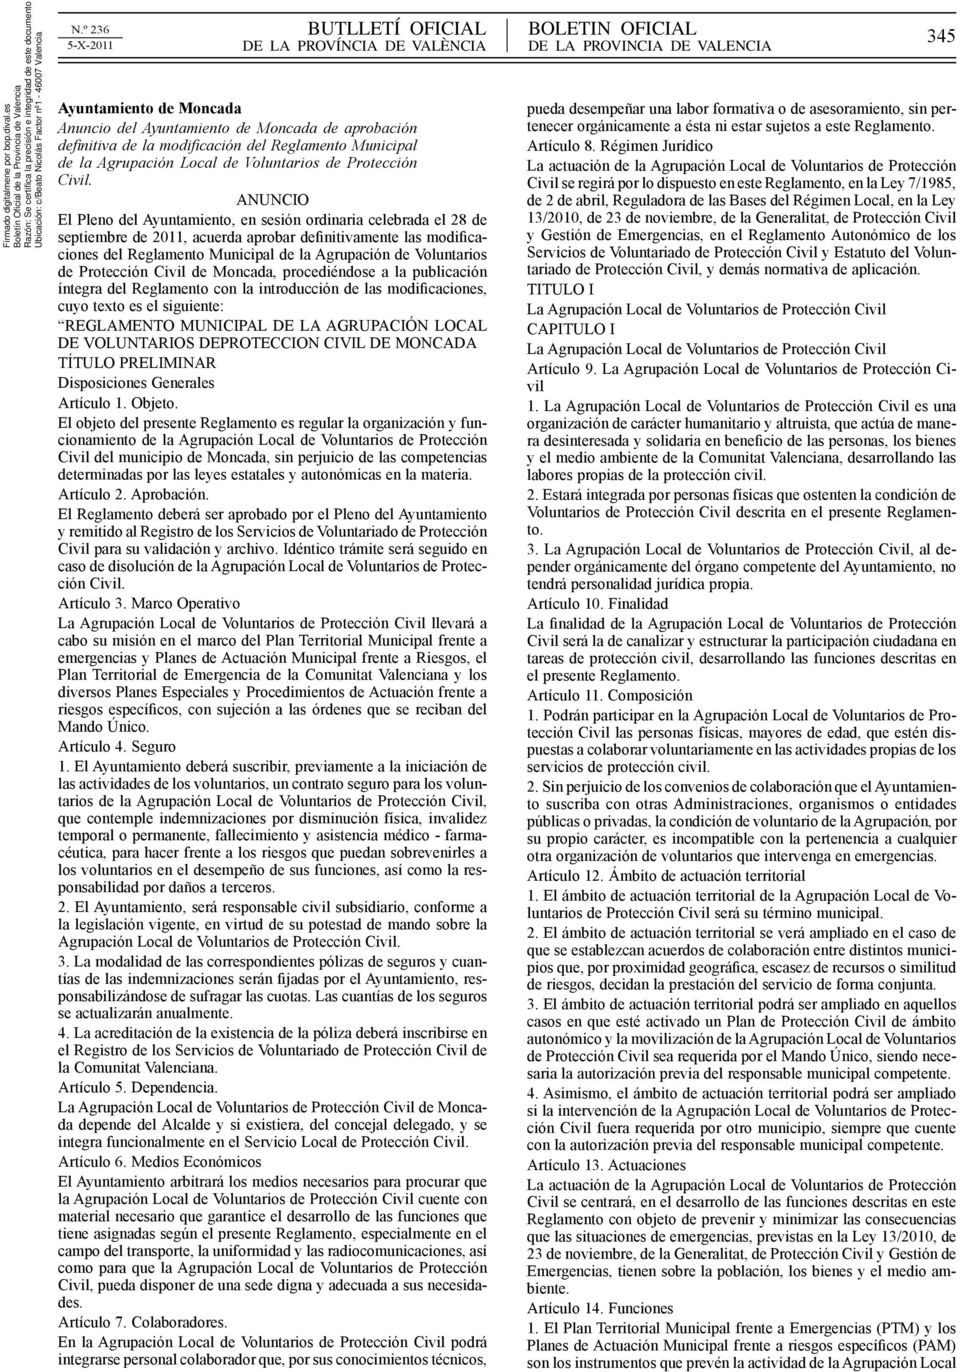 Protección Civil de Moncada, procediéndose a la publicación íntegra del Reglamento con la introducción de las modificaciones, cuyo texto es el siguiente: REGLAMENTO MUNICIPAL DE LA AGRUPACIÓN LOCAL